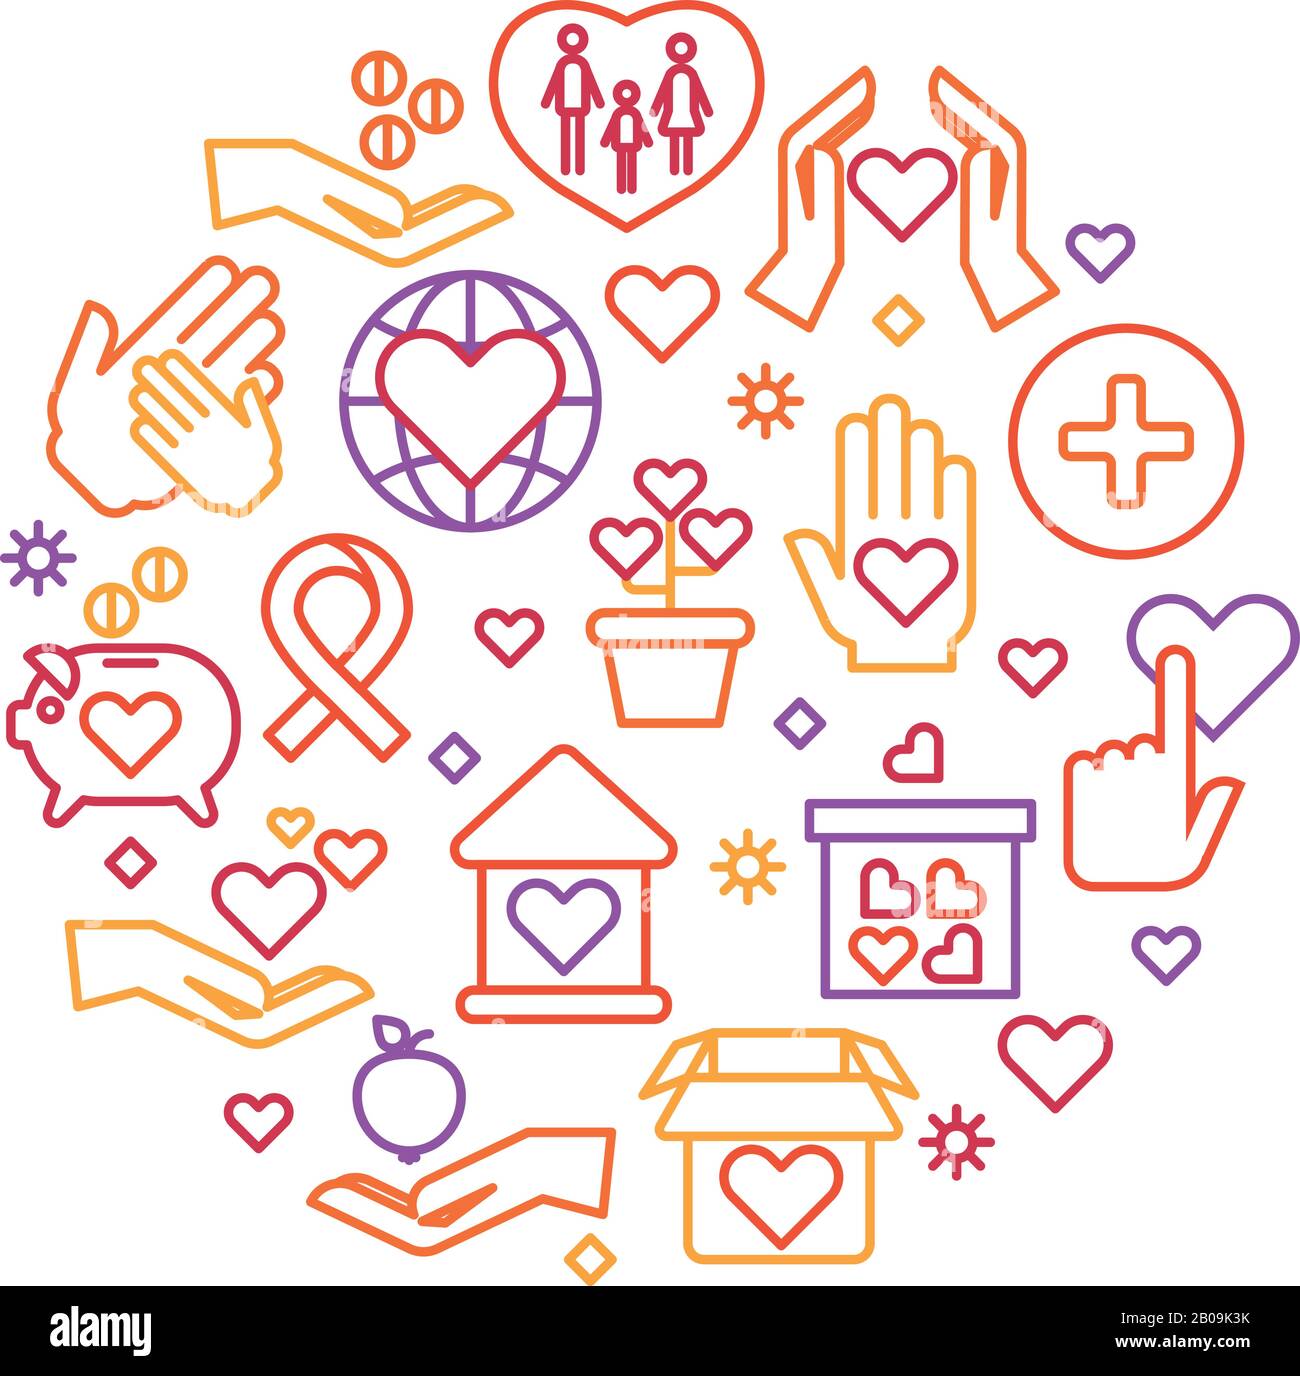 Charity, Care, Help Vector Concept, gemeinnützige Organisation und Logo für Freiwillige. Rundes Abzeichen für die Spendenorganisation, Abbildung der Handspende Stock Vektor